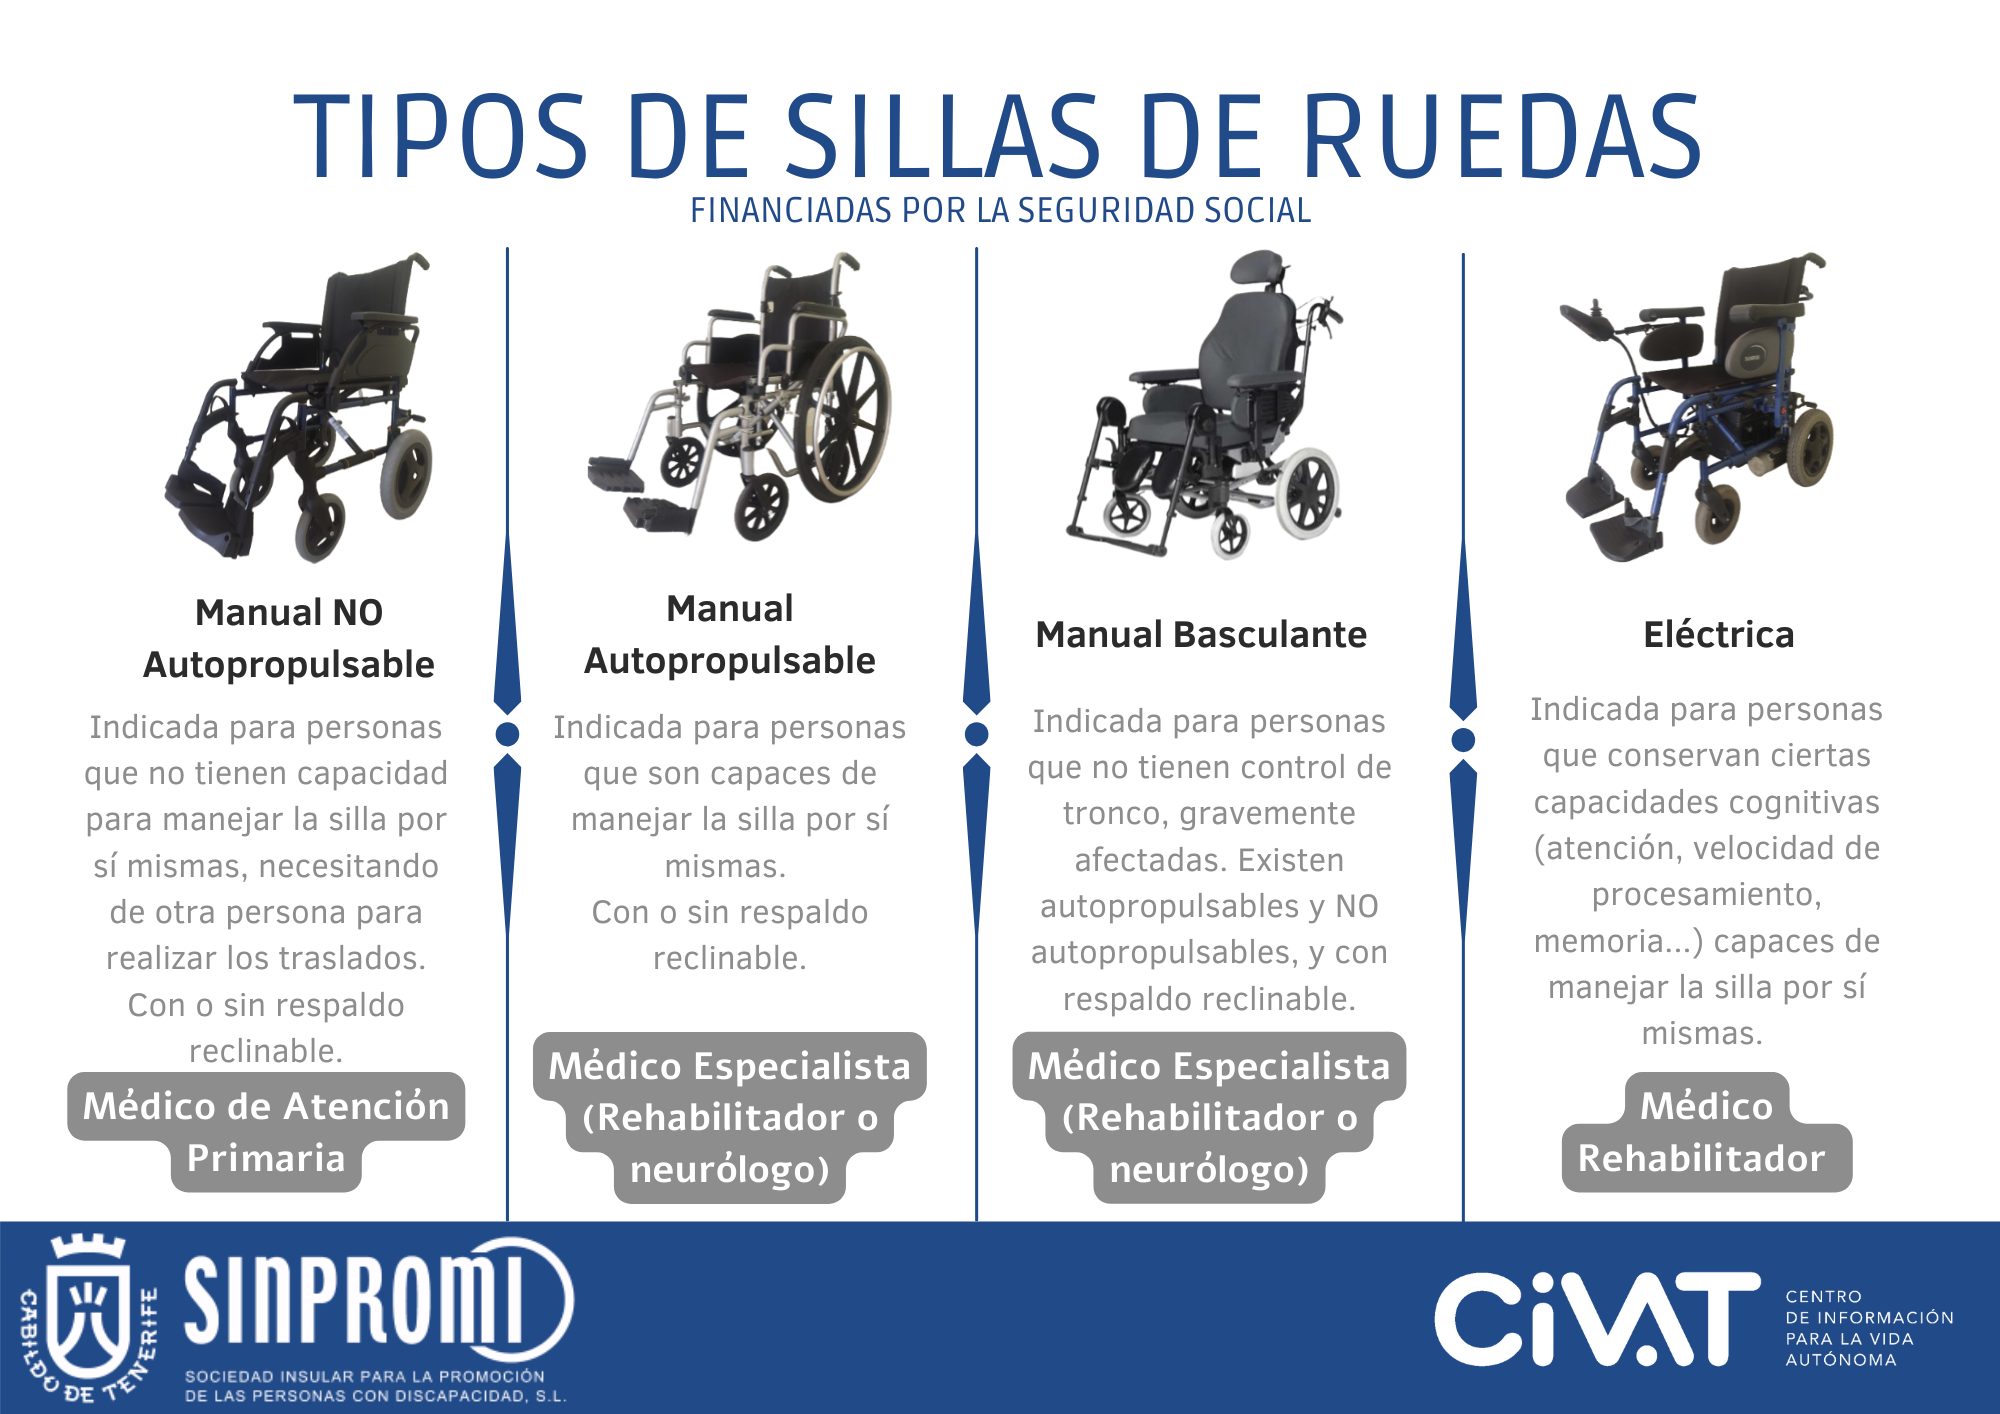 Infografía de tipos de sillas de ruedas financiadas por la Seguridad Social